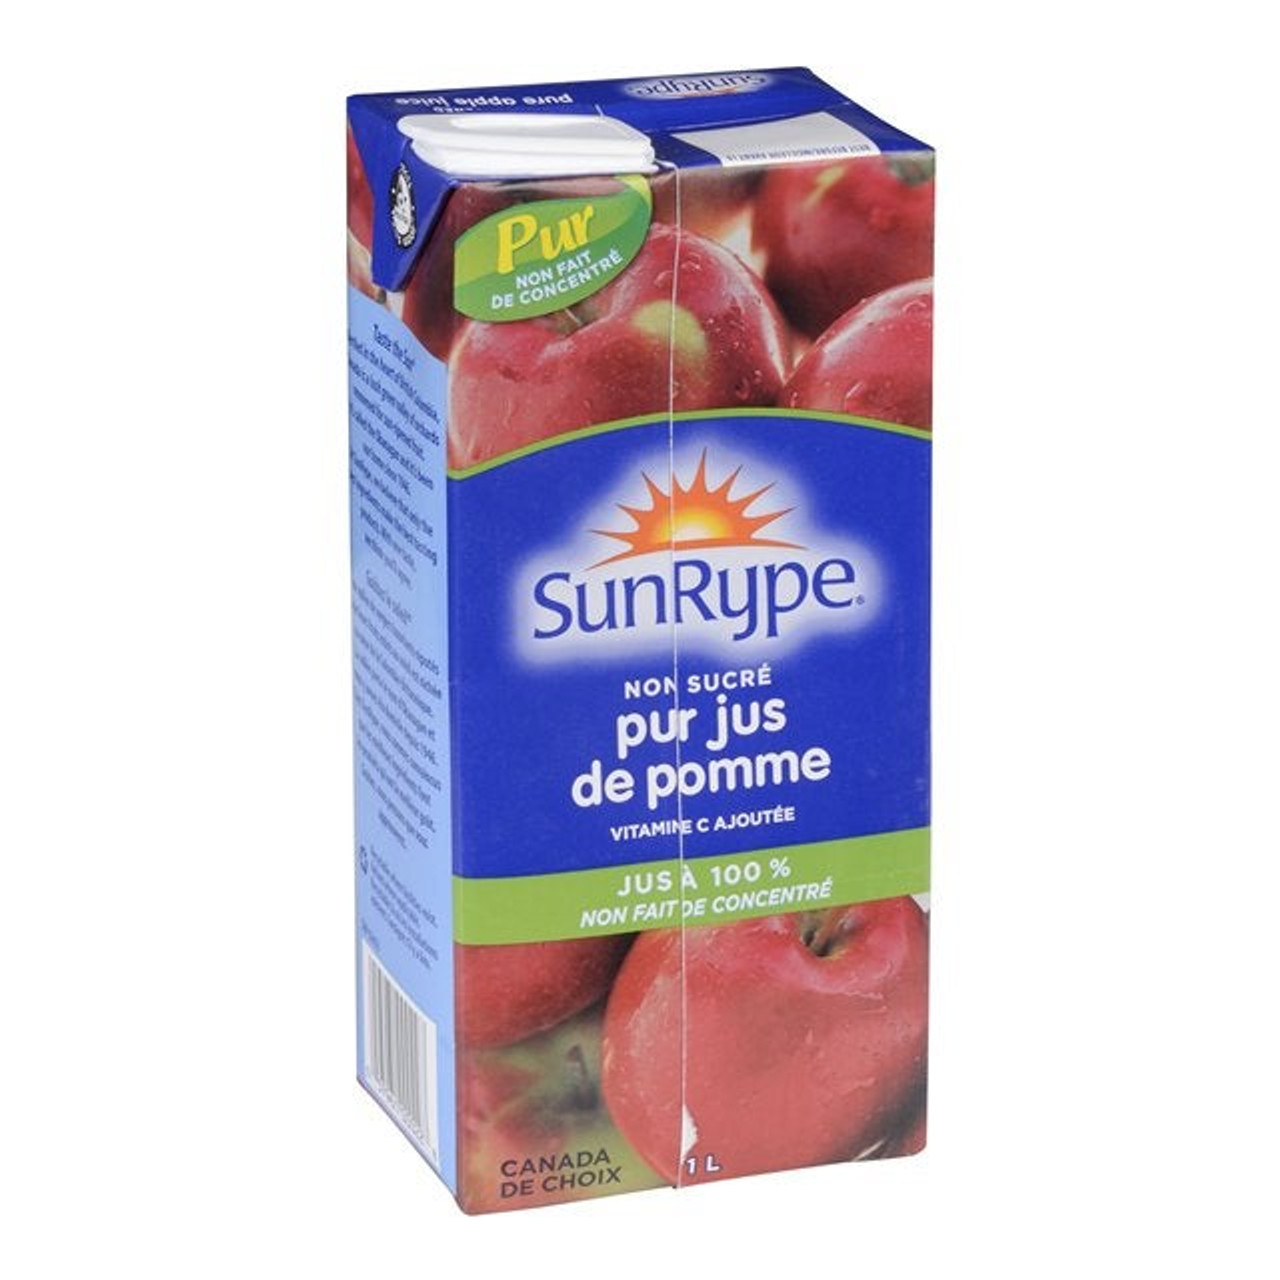 Sunrype Pure Apple Juice